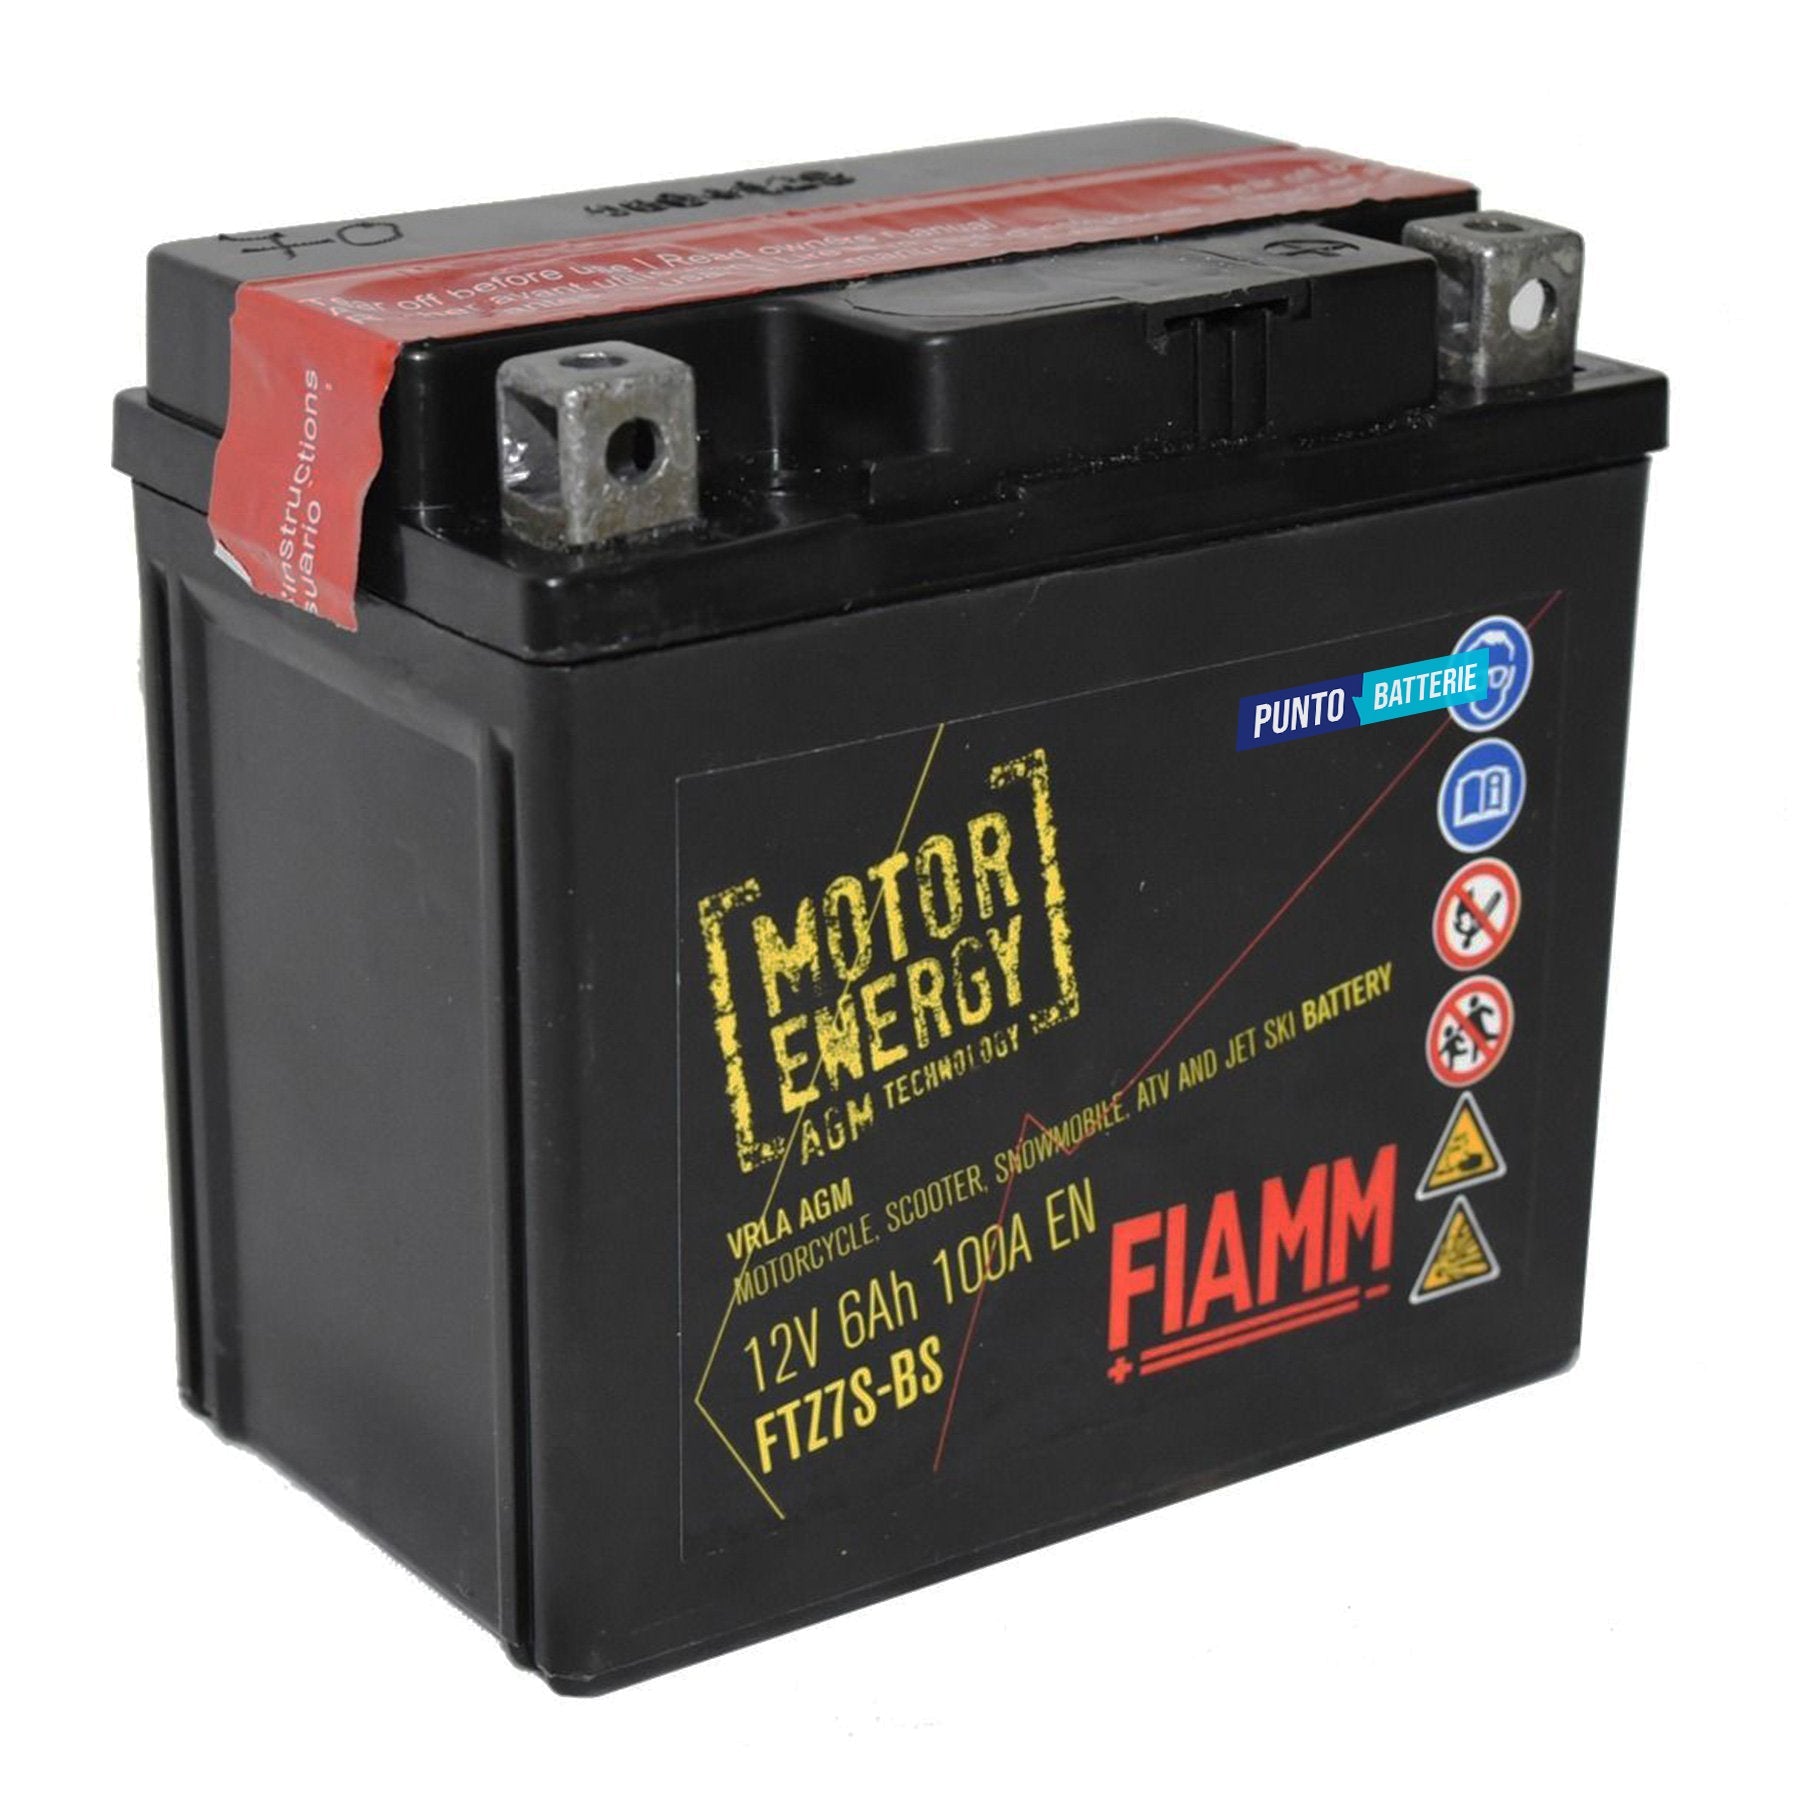 Batteria originale Fiamm Motor Energy AGM FTZ7S-BS, dimensioni 113 x 70 x 105, polo positivo a destra, 12 volt, 6 amperora, 100 ampere. Batteria per moto, scooter e powersport.